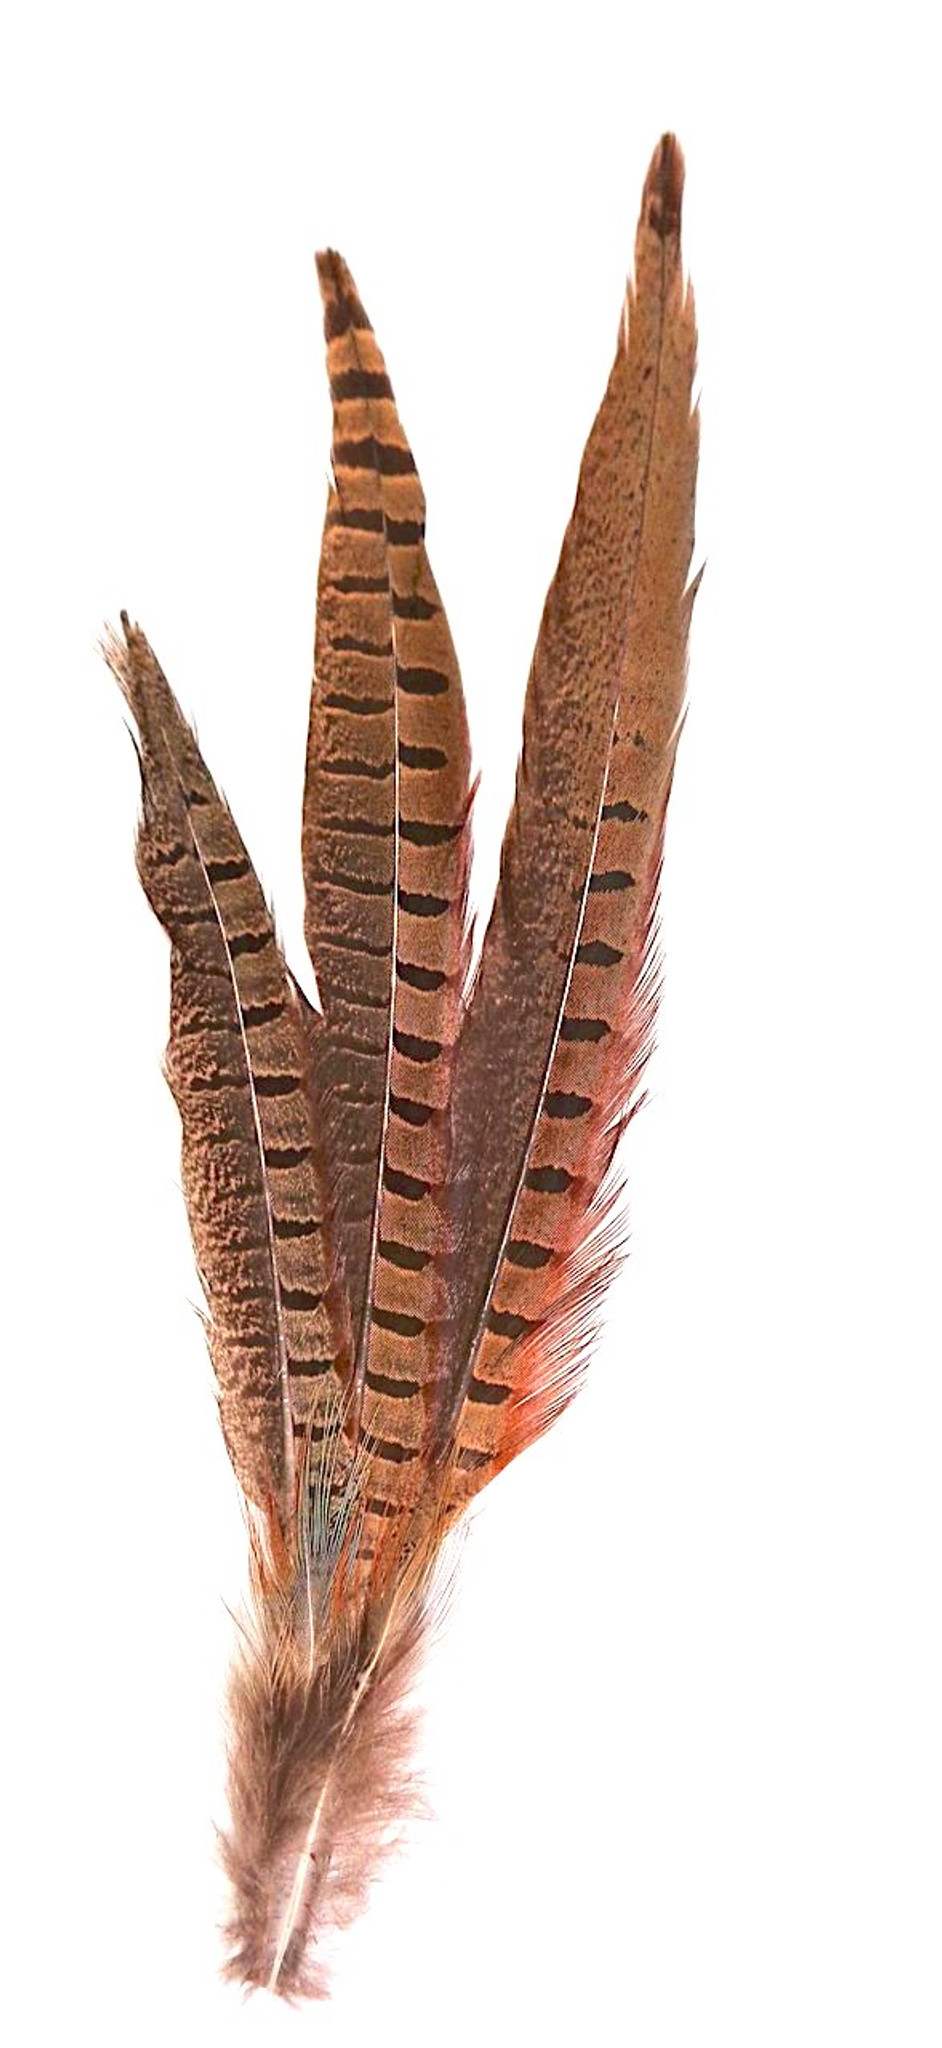 Pheasant Tail Feather Hair Clip per Each